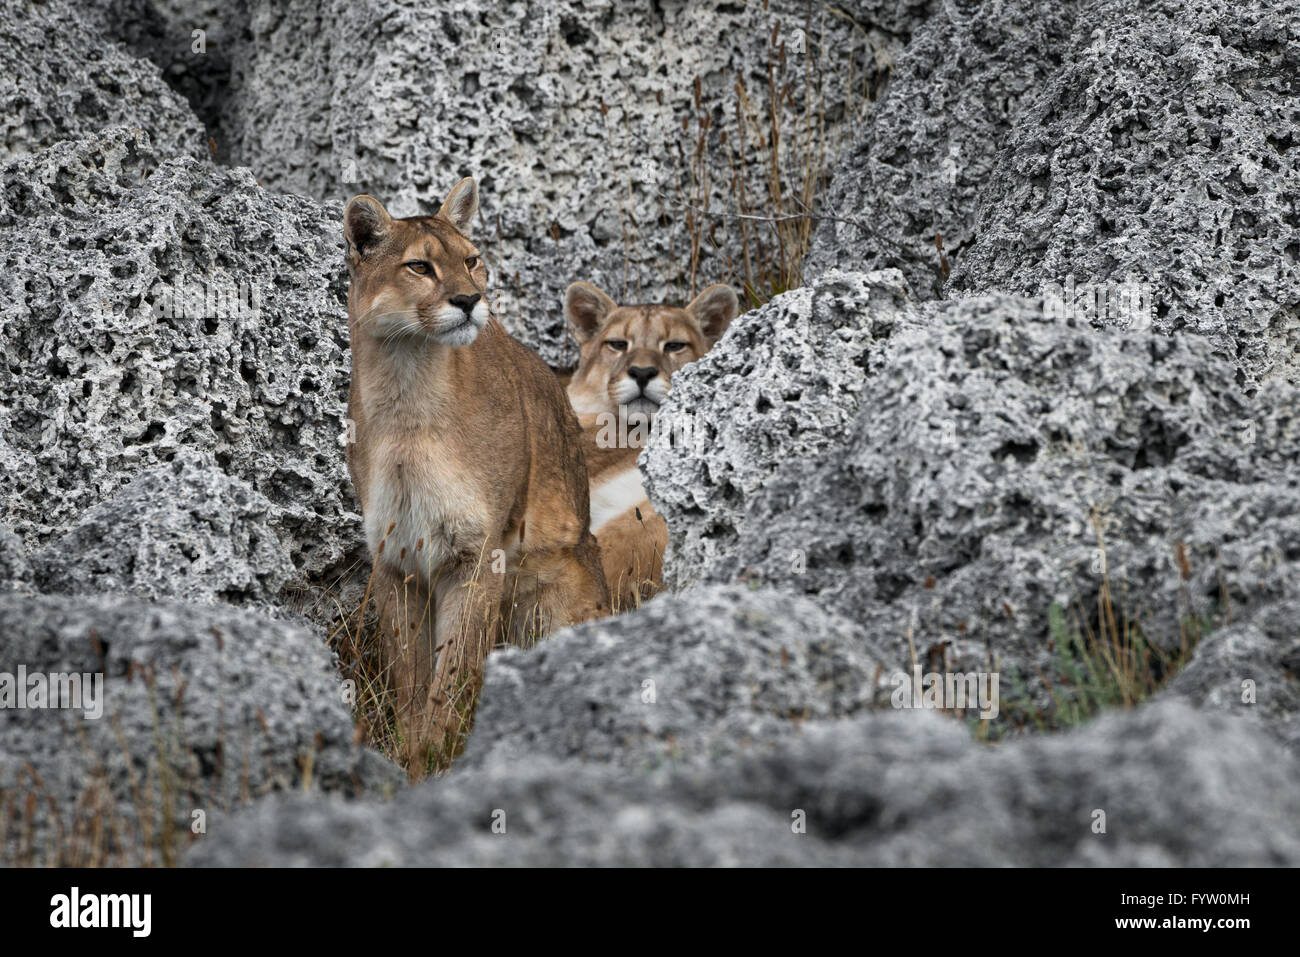 Puma in Torres del Paine Stock Photo